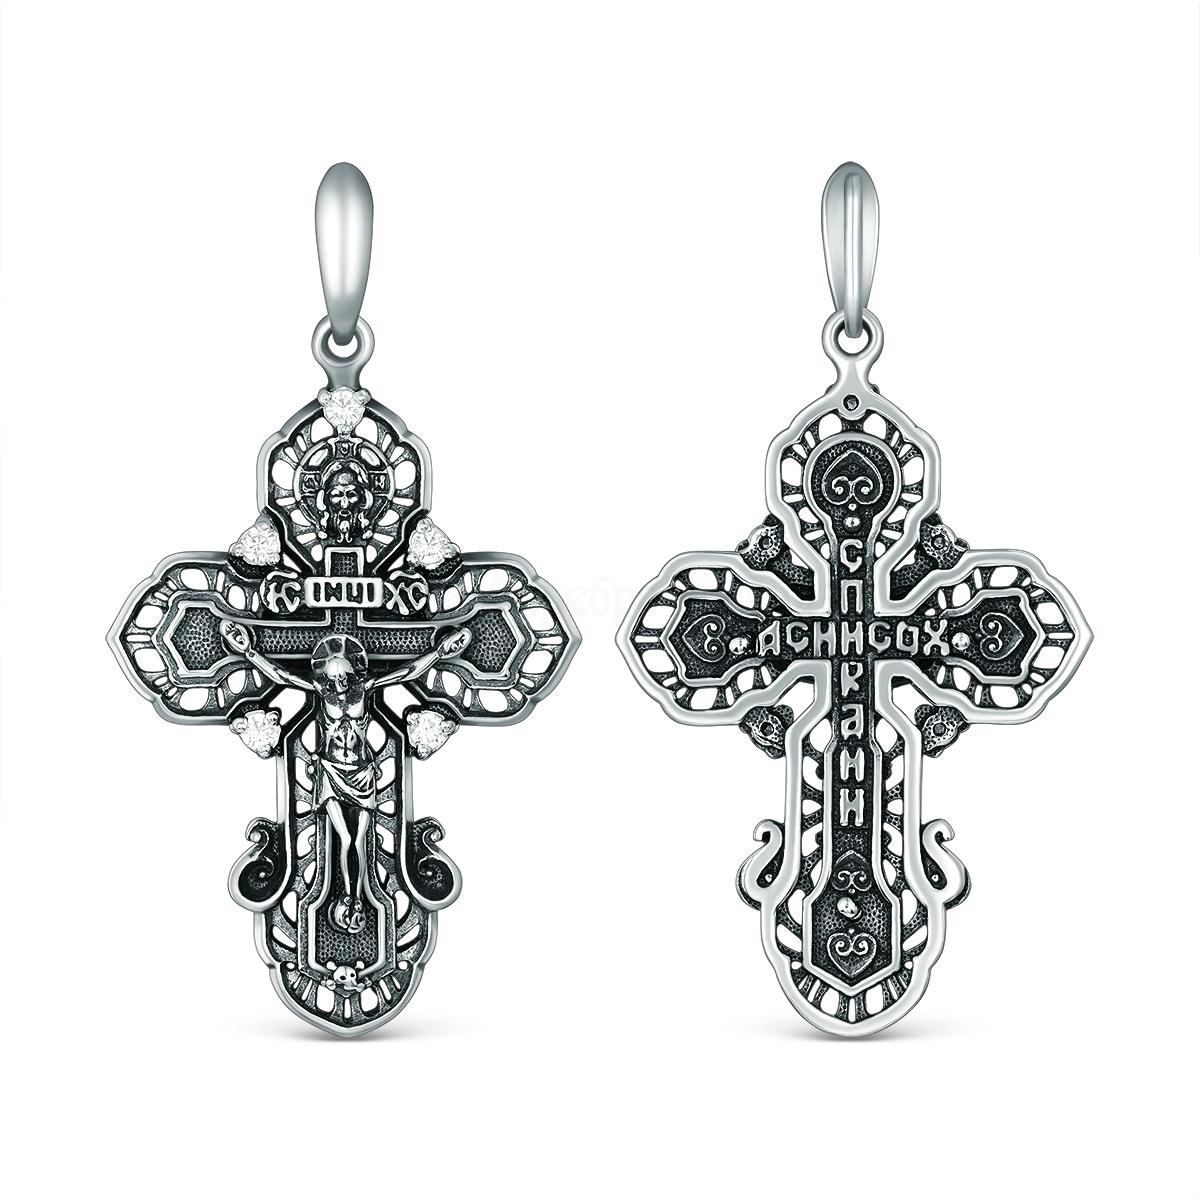 Крест православный из чернёного серебра и фианитами - Спаси и сохрани Кр-943 ч Кр-943 ч